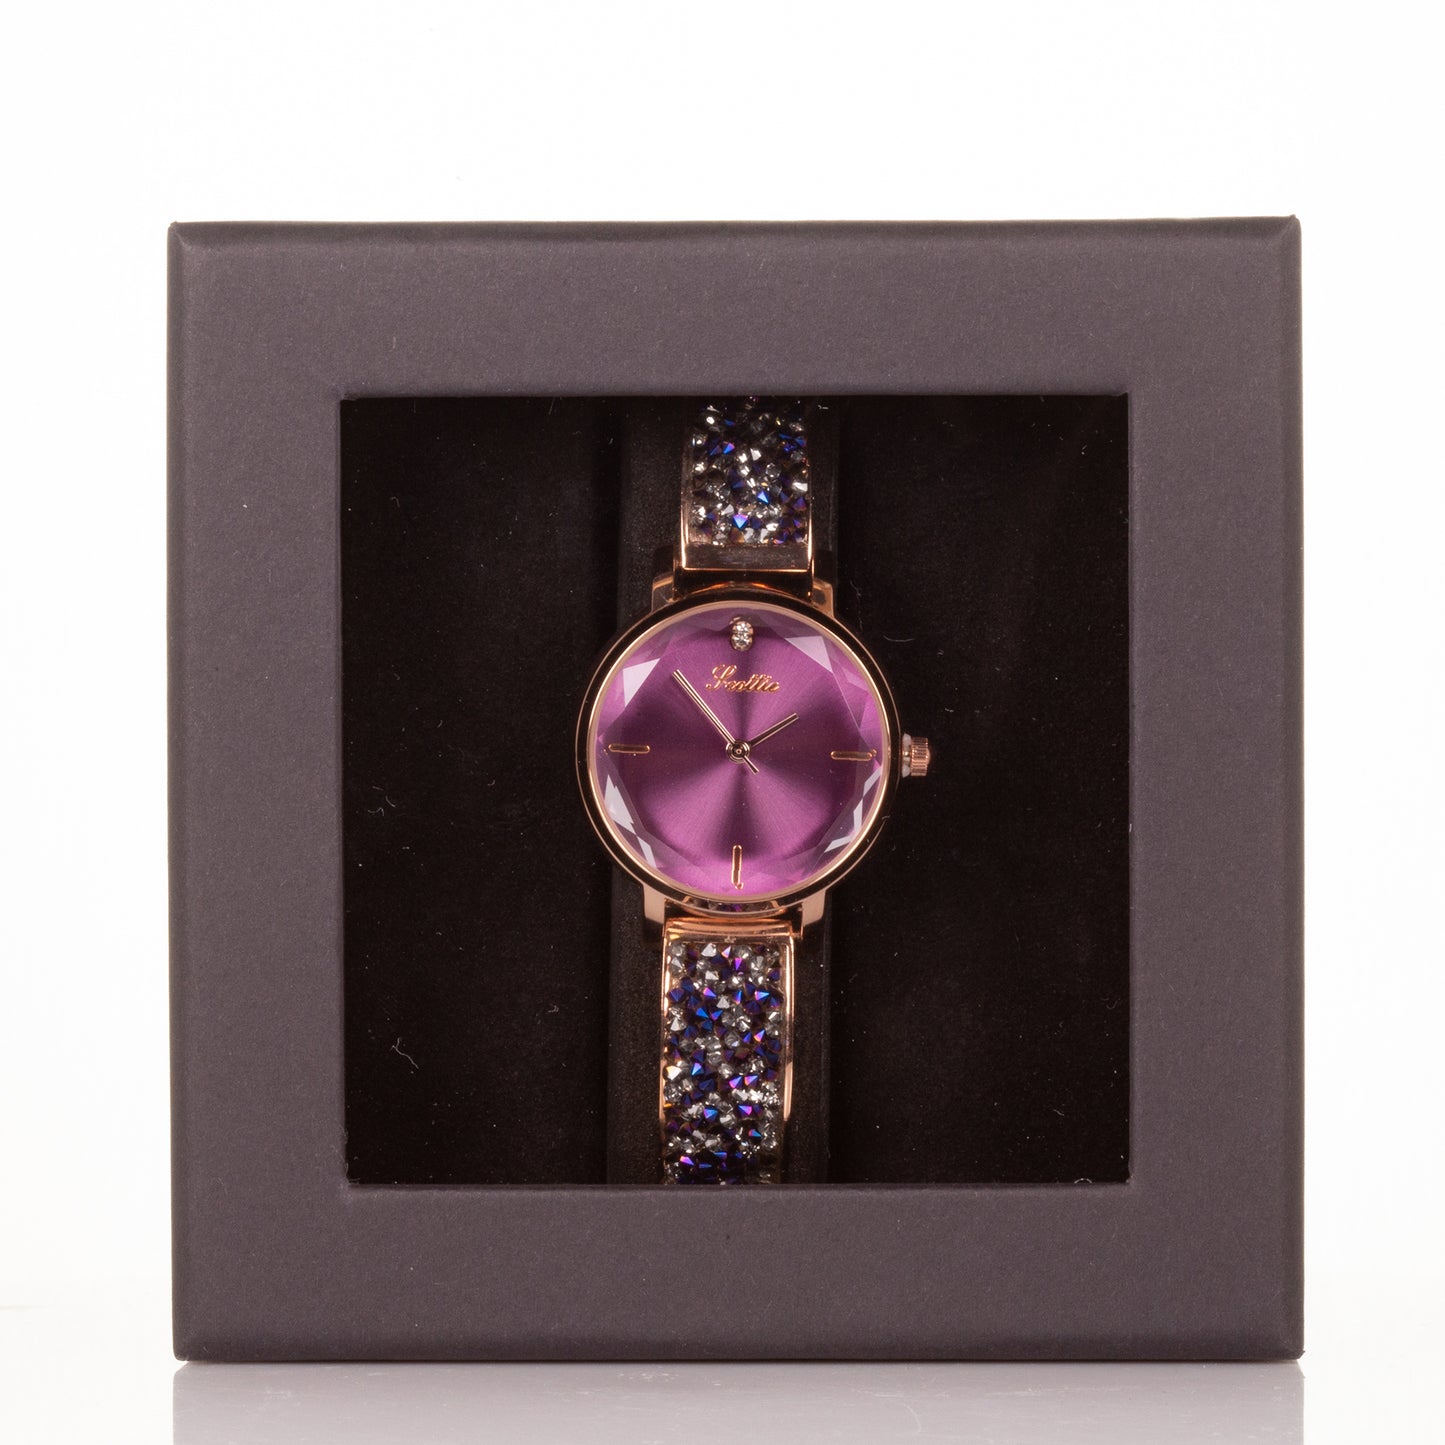 Vysoce kvalitní slitinové hodinky s mechanismem Miyota v dárkové krabičce, Fialový ciferník